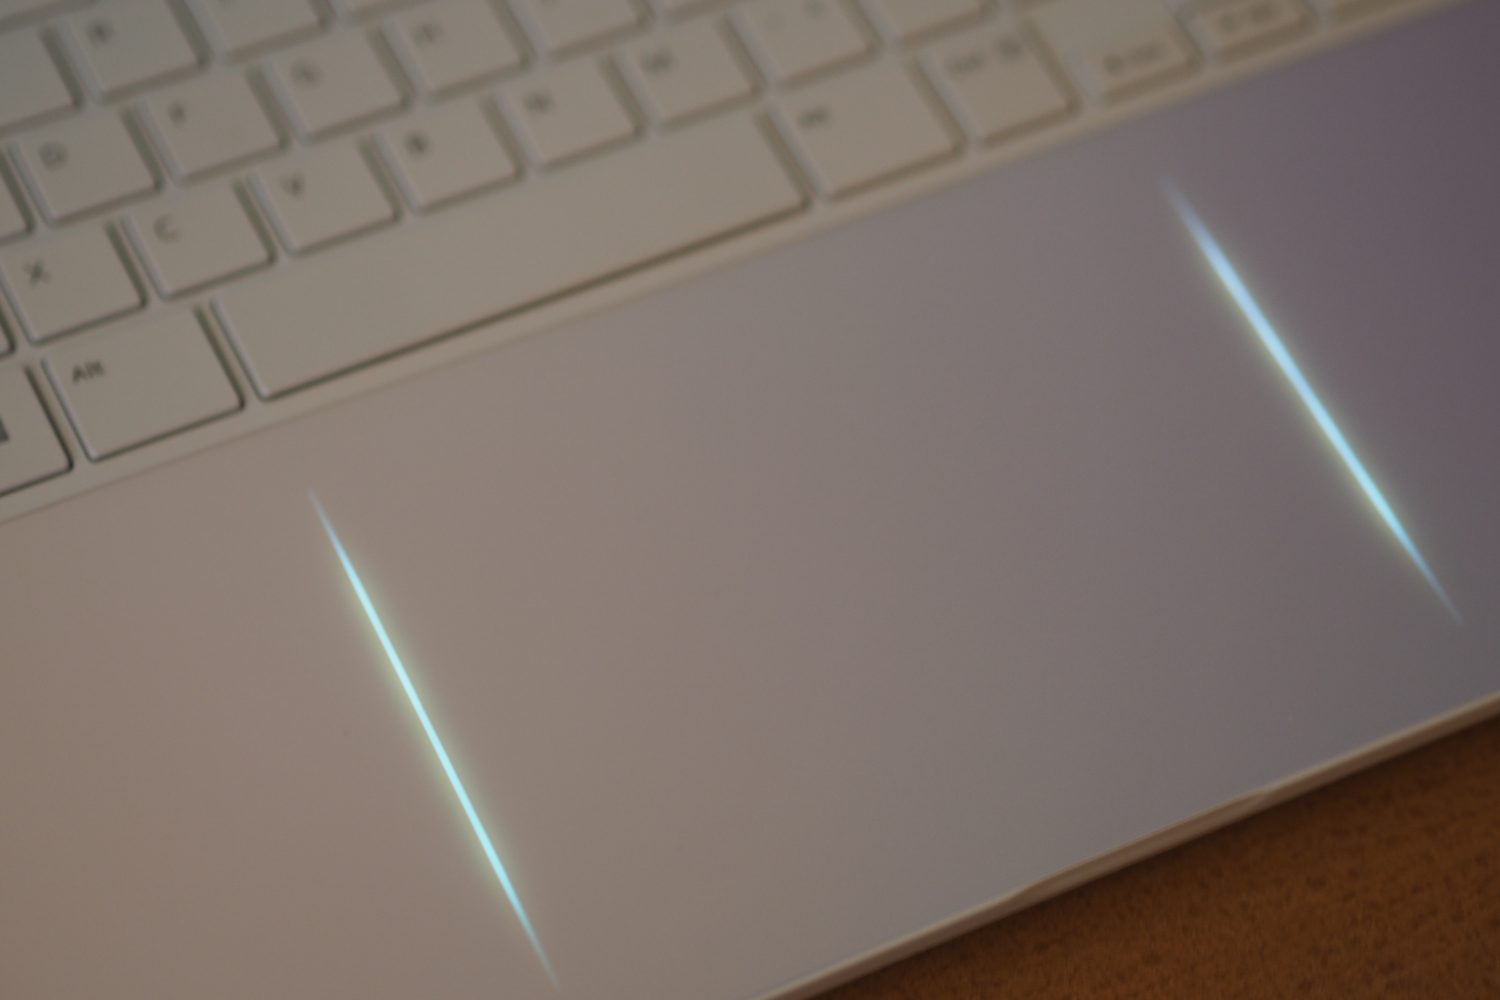 Visão superior do LG Gram Style mostrando os LEDs do touchpad.